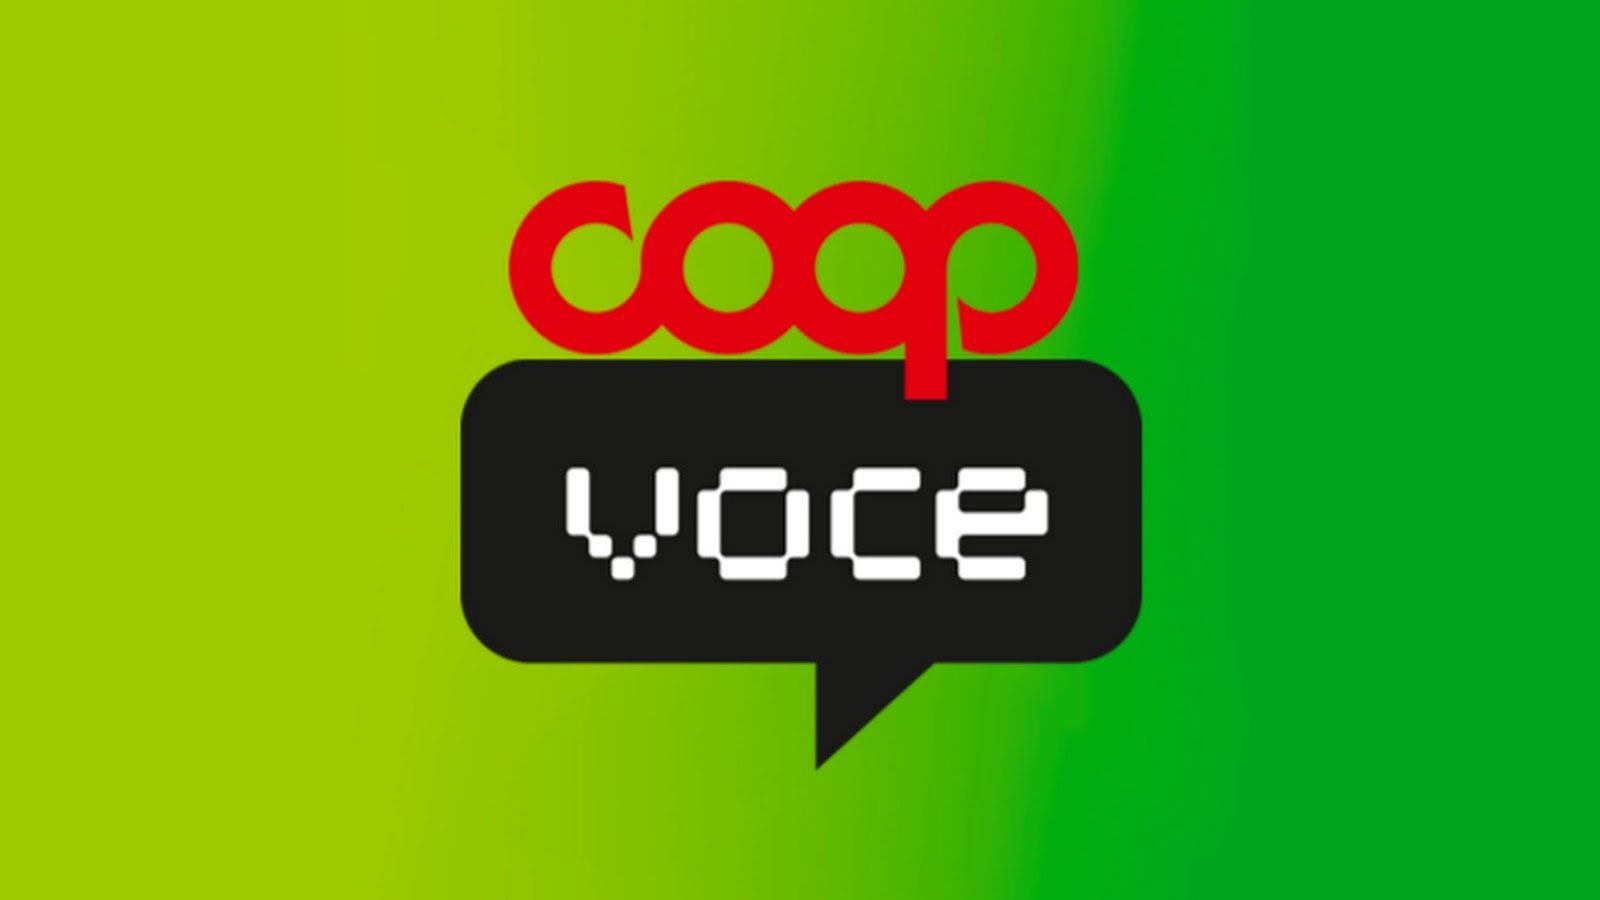 CoopVoce: nuove offerte a 3 euro con minuti e giga per battere Vodafone e TIM